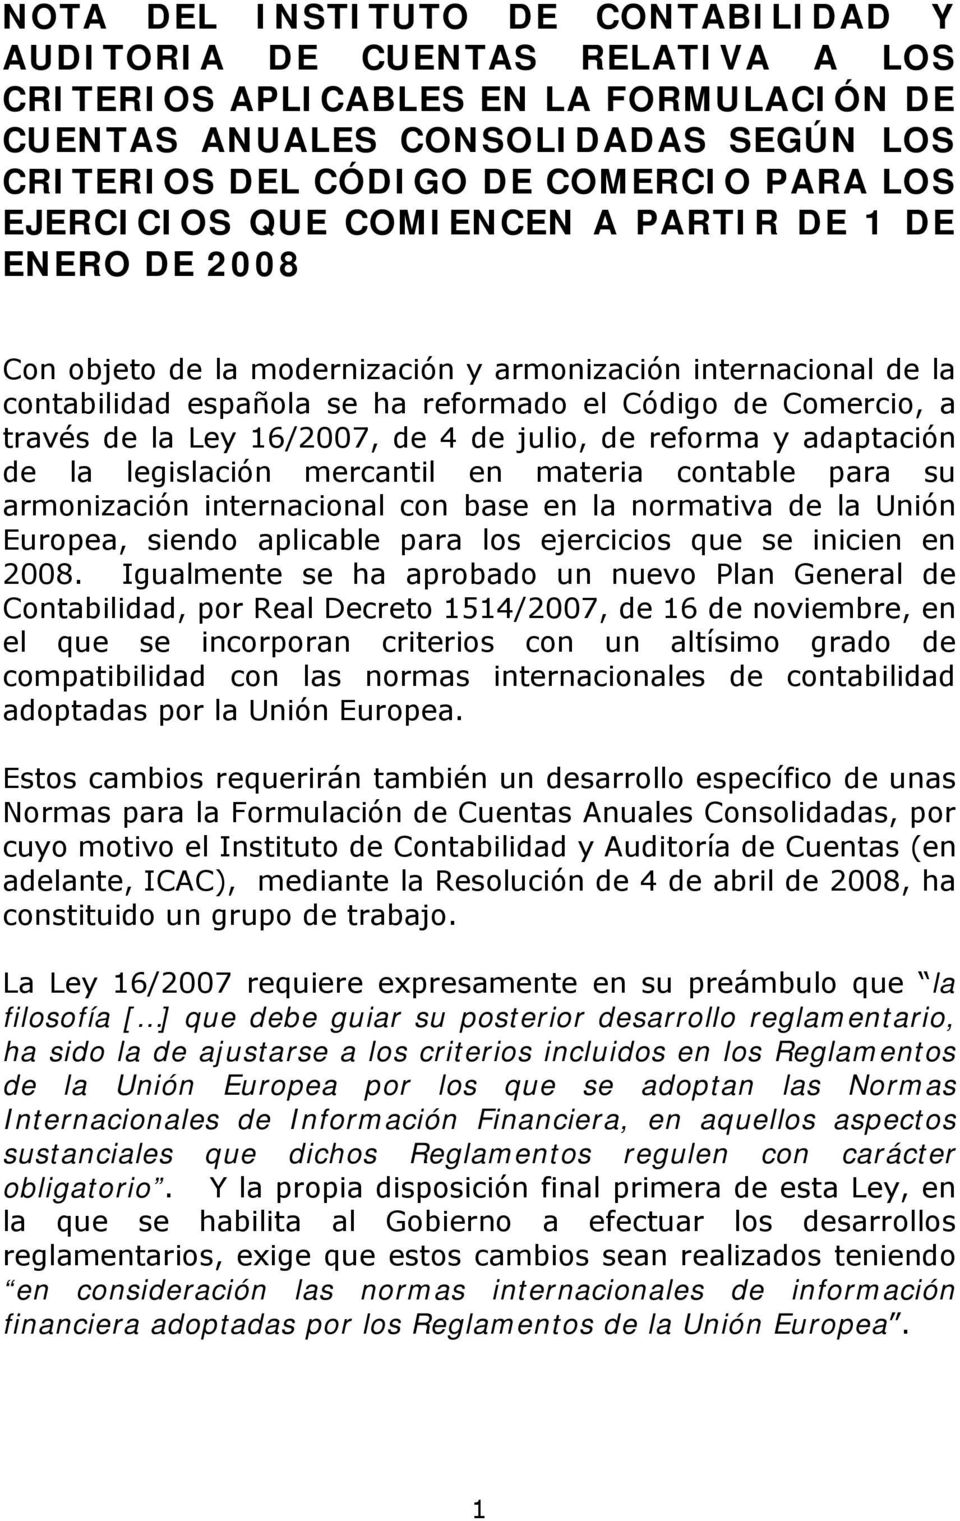 Ley 16/2007, de 4 de julio, de reforma y adaptación de la legislación mercantil en materia contable para su armonización internacional con base en la normativa de la Unión Europea, siendo aplicable